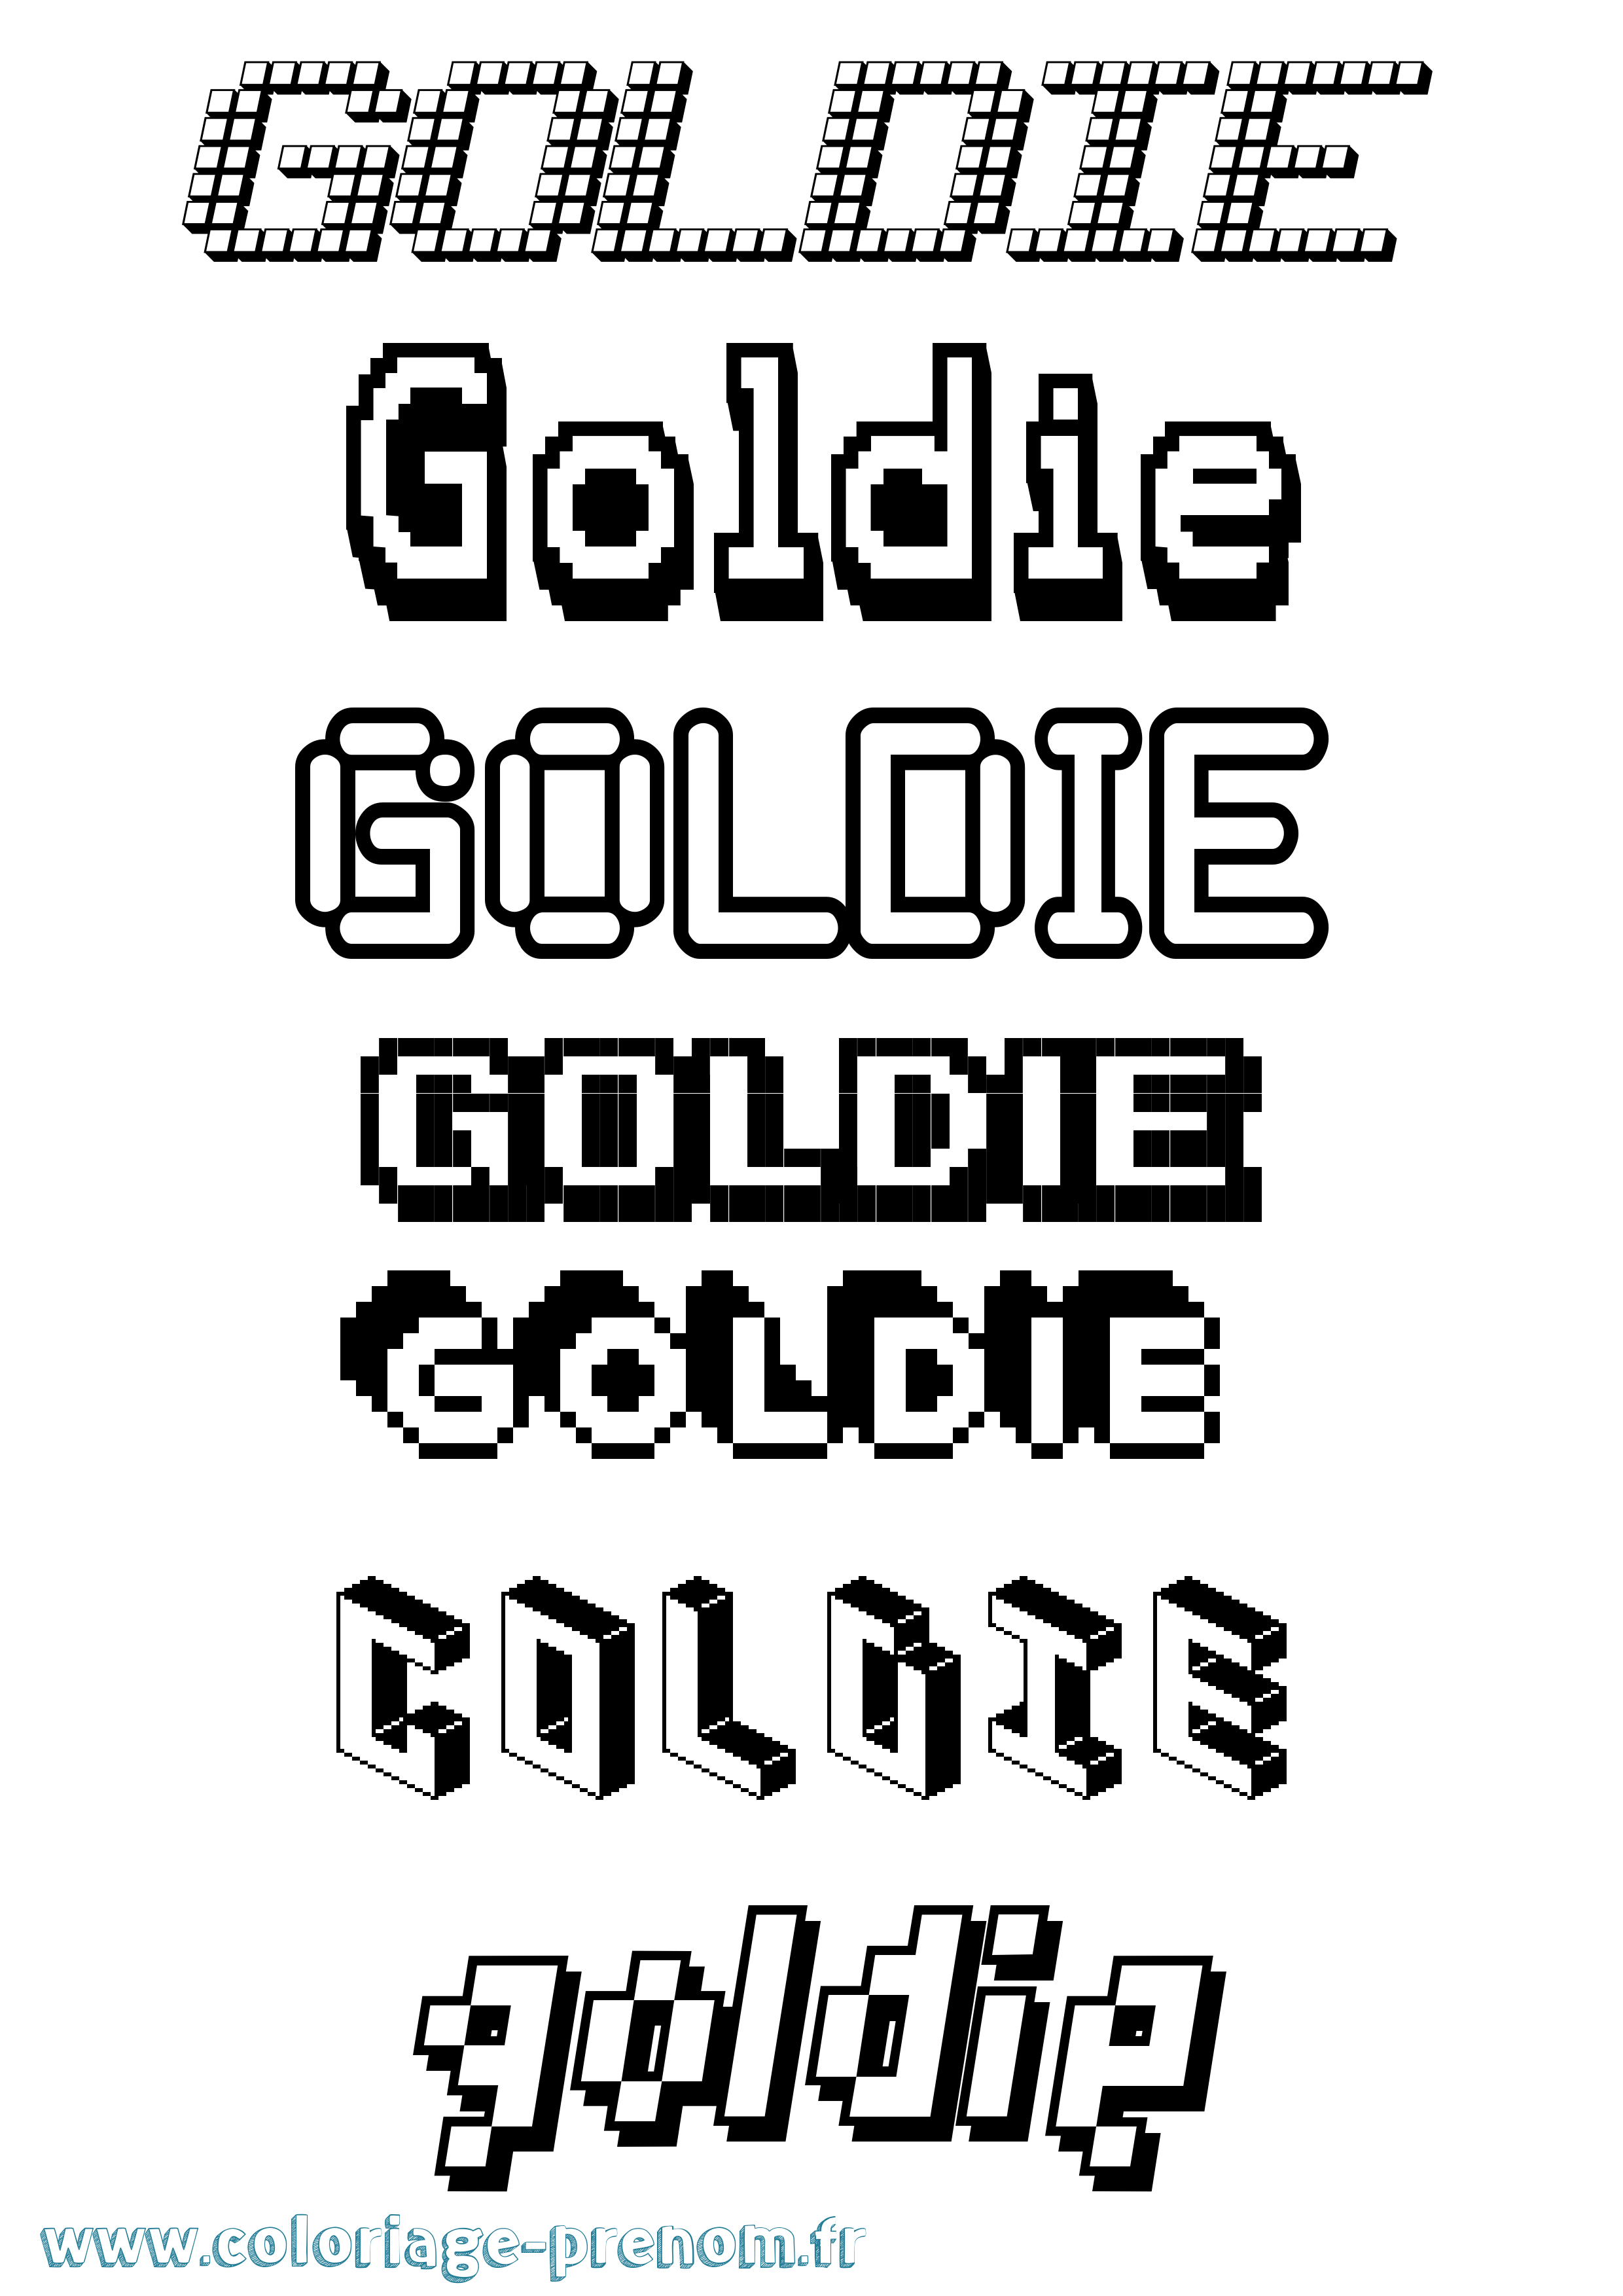 Coloriage prénom Goldie Pixel